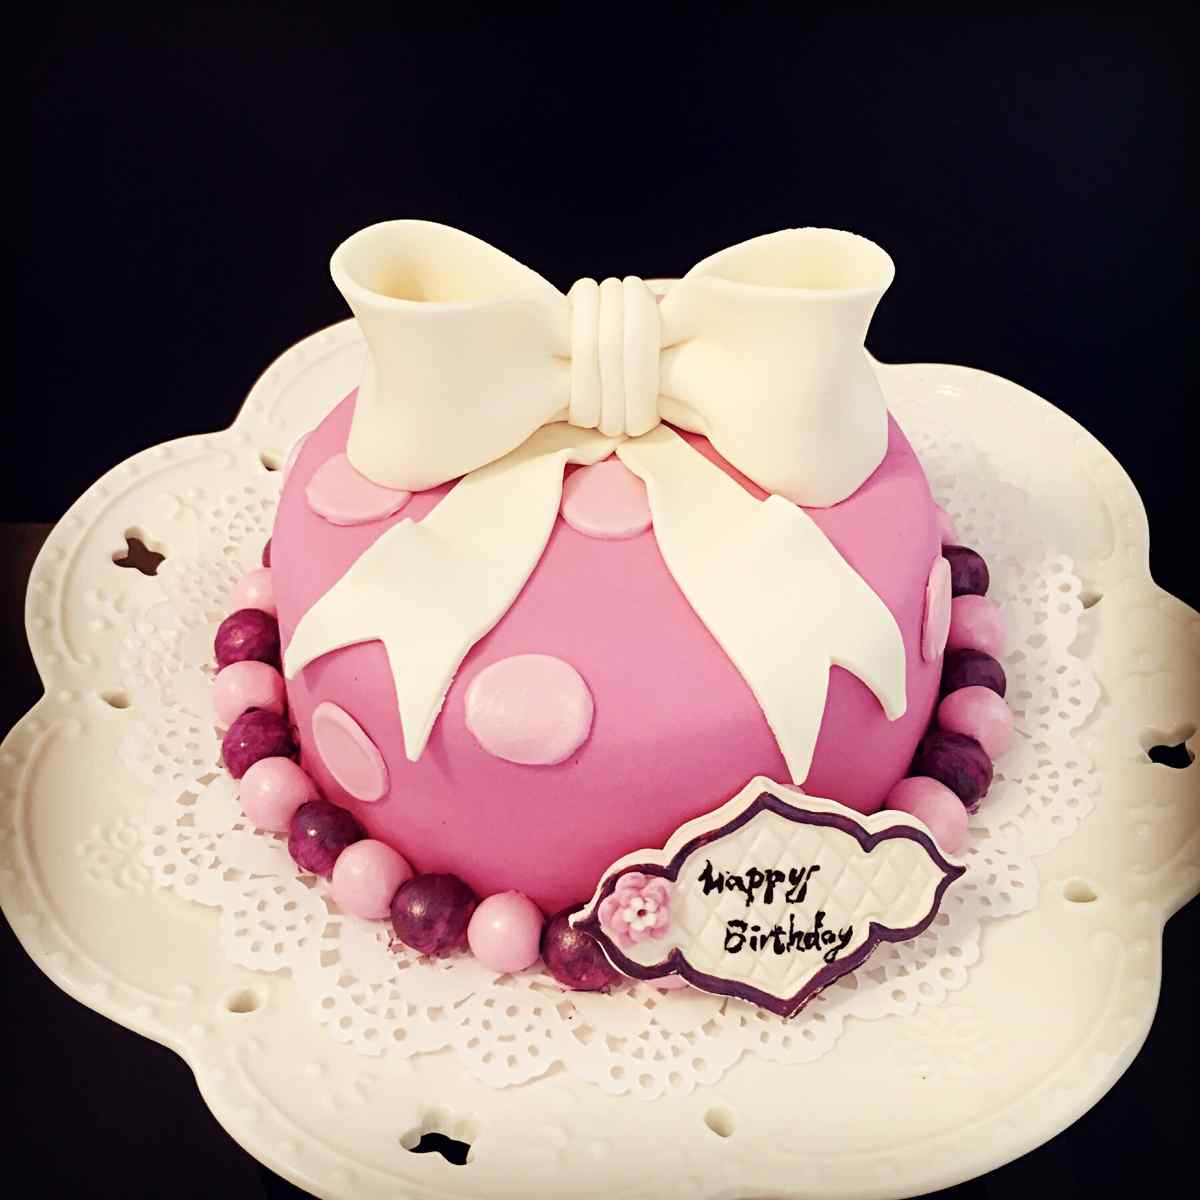 翻糖蛋糕可爱粉色蝴蝶结生日蛋糕桌面壁纸